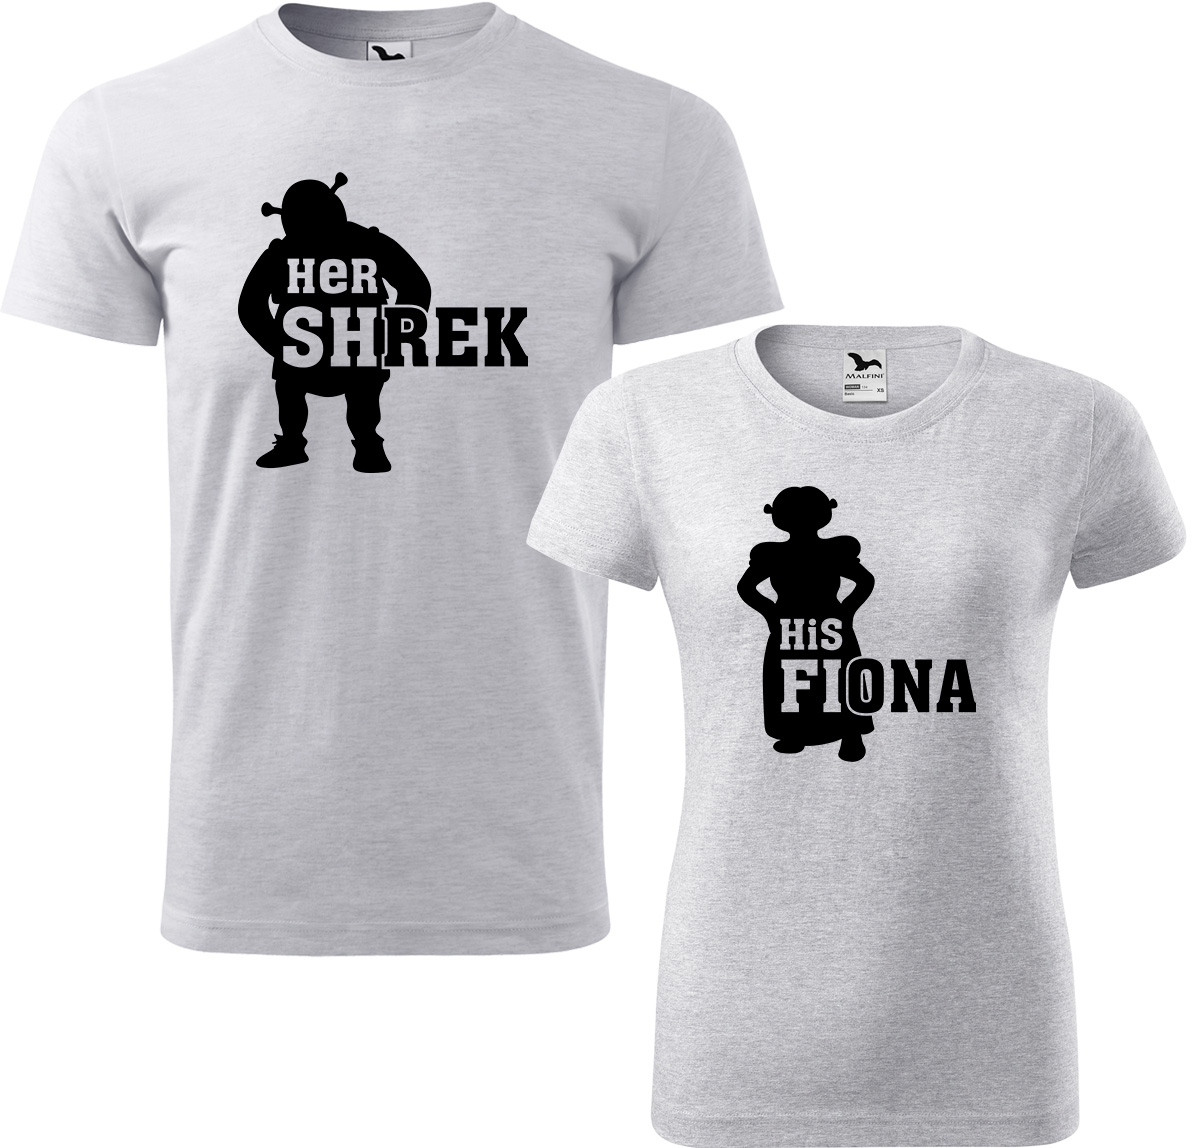 Trička pro páry - Shrek a Fiona Barva: Světle šedý melír (03), Velikost dámské tričko: S, Velikost pánské tričko: L